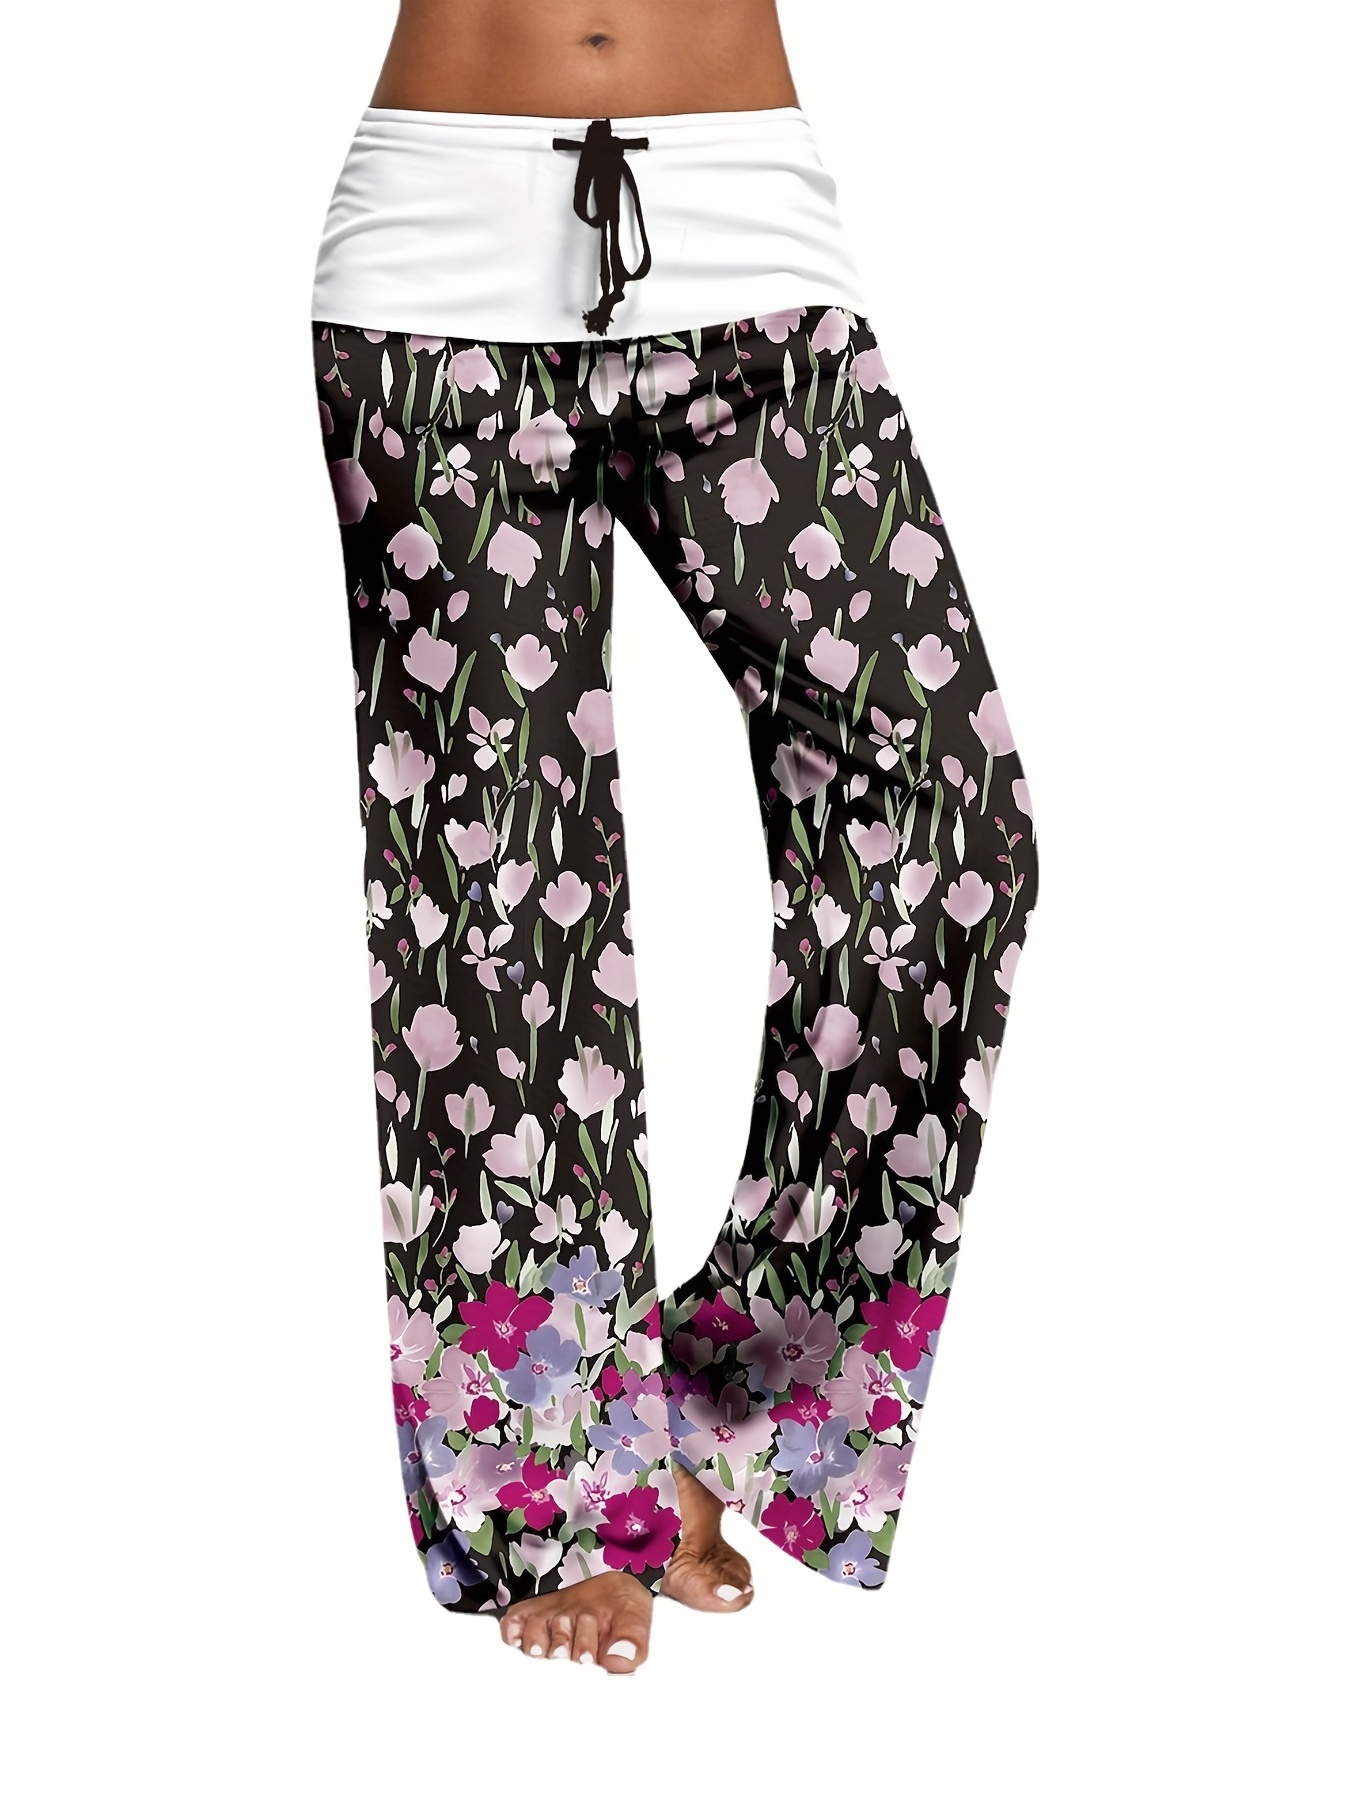 Floral print pants - Women